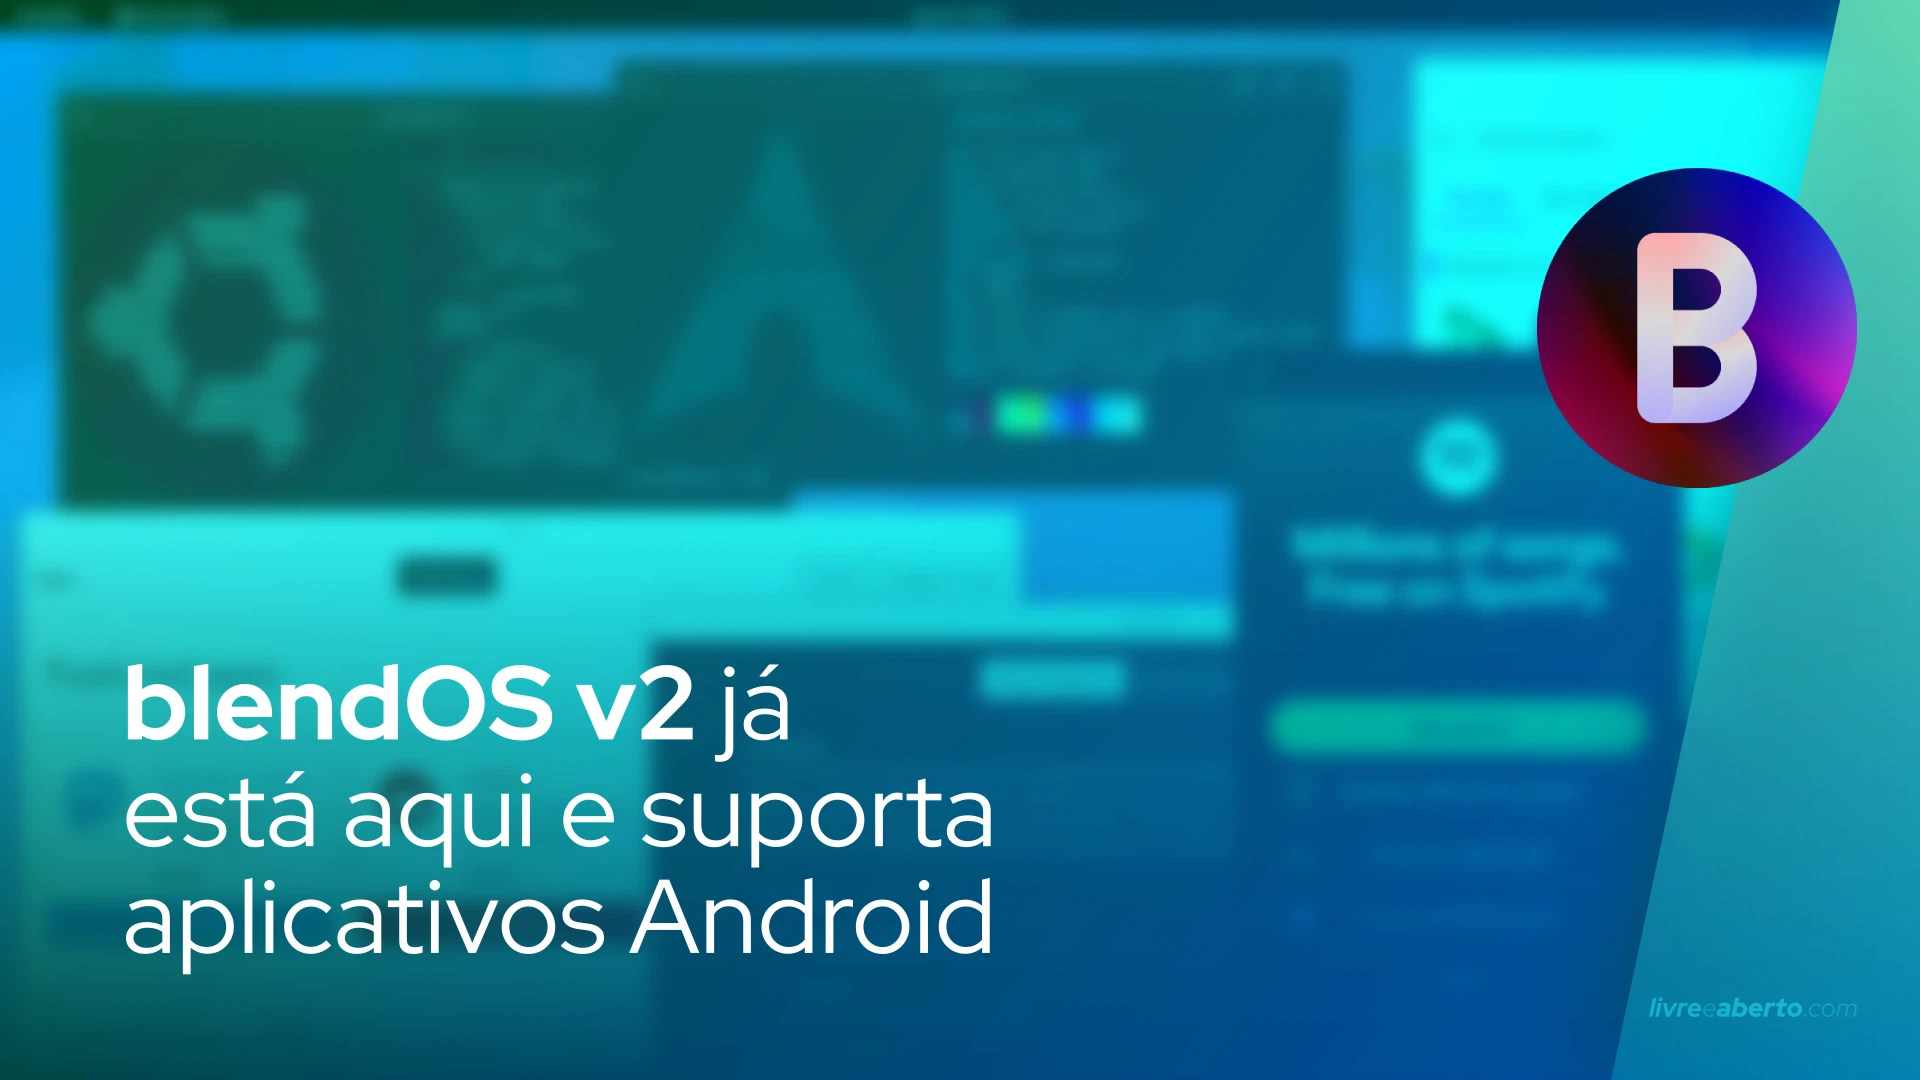 blendOS v2 já está aqui e suporta aplicativos Android